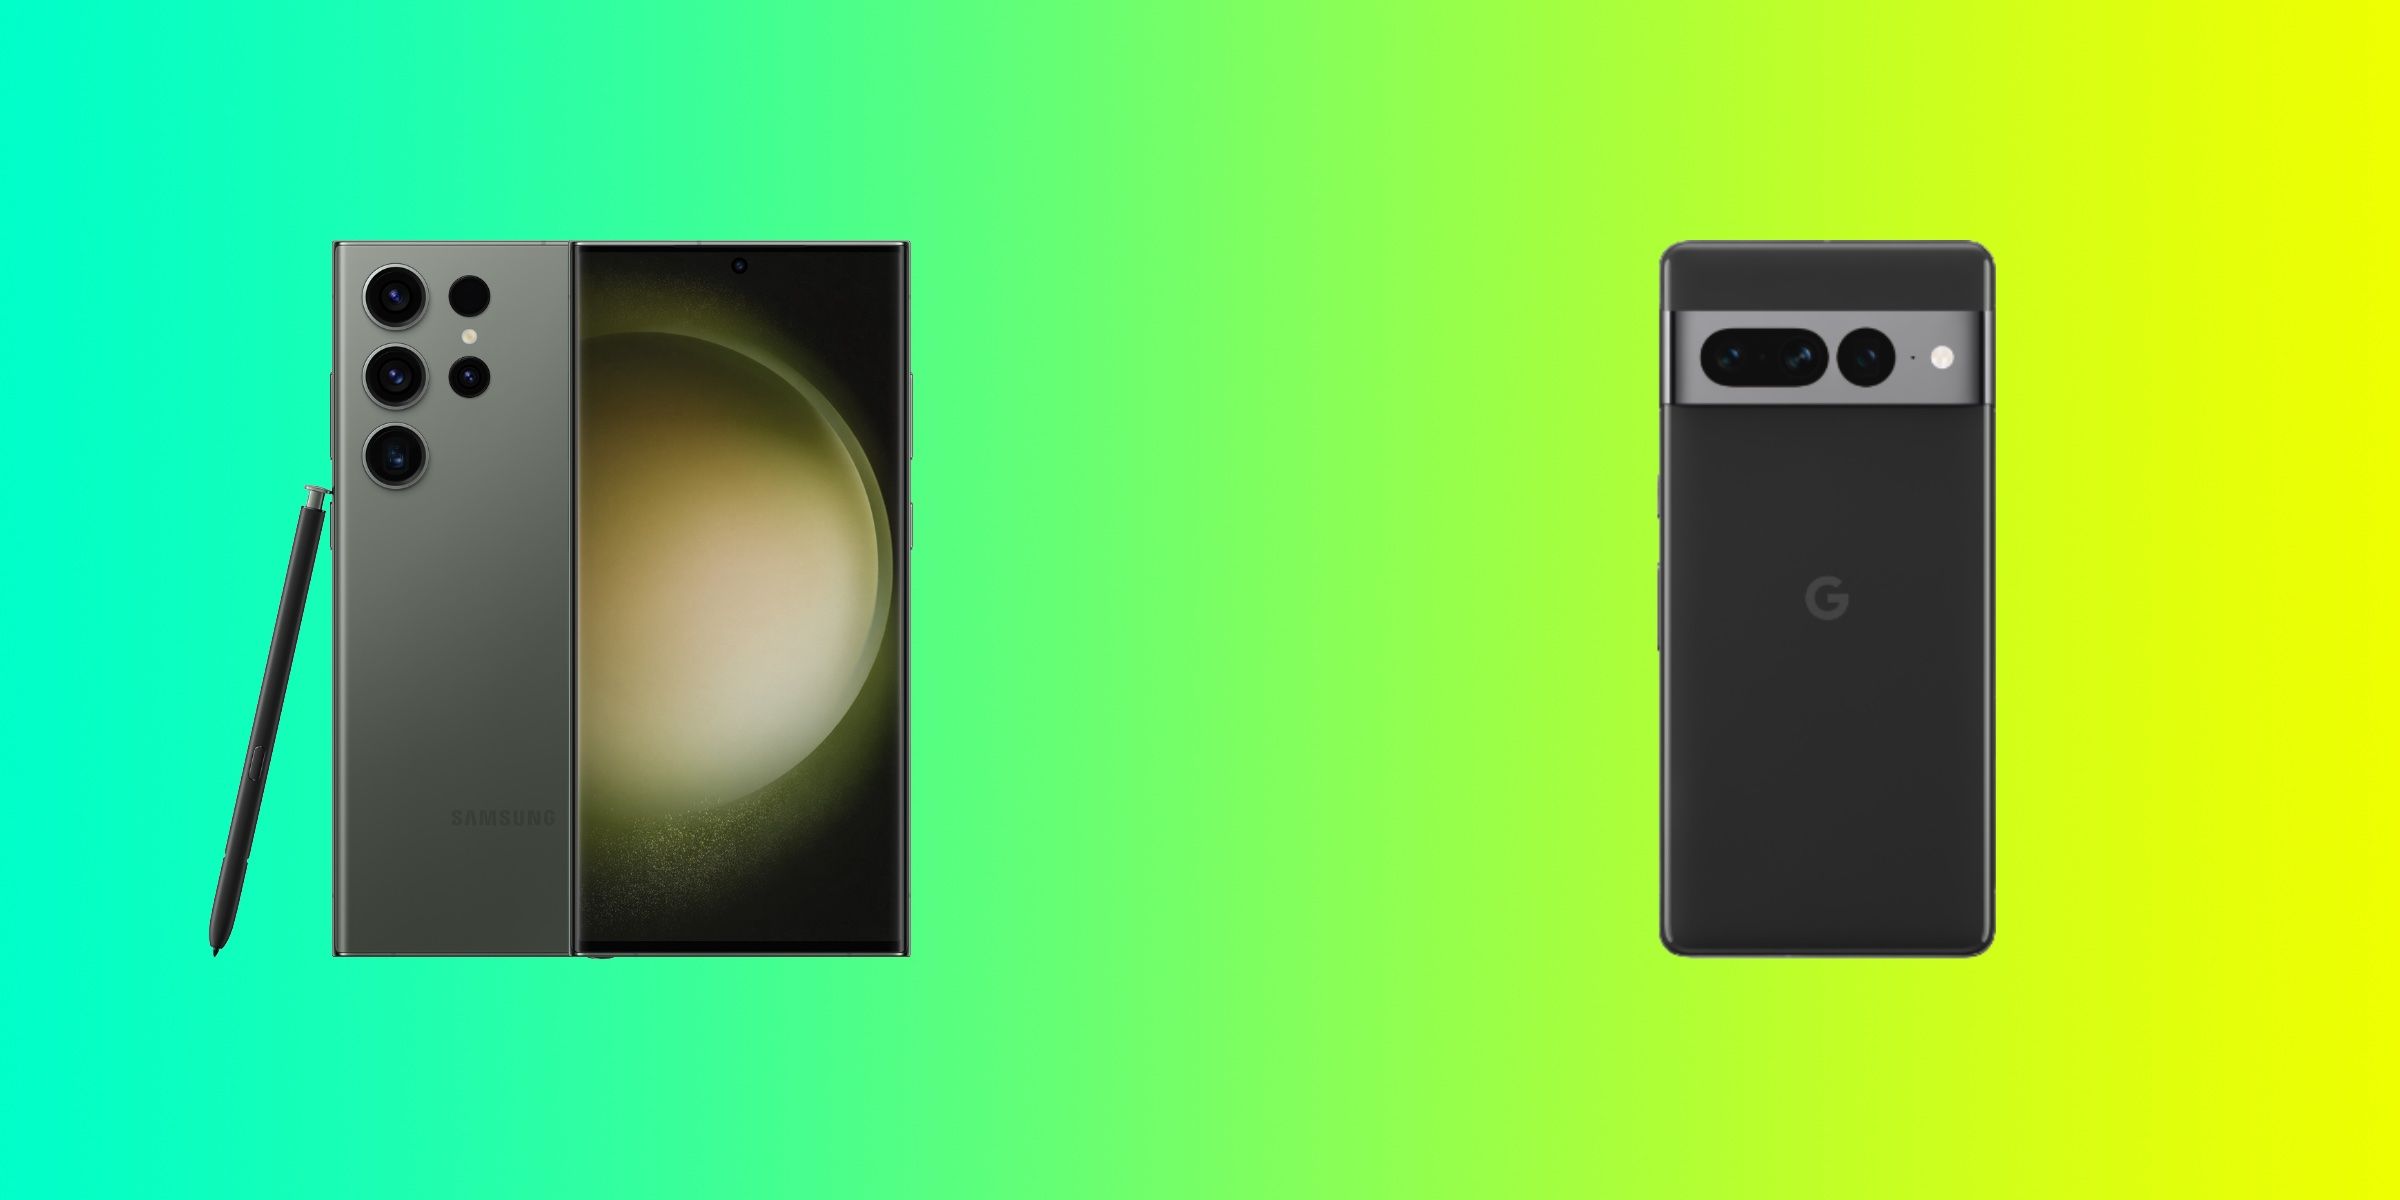 O S23 Ultra ao lado do Pixel 7 Pro contra um fundo gradiente verde e amarelo.